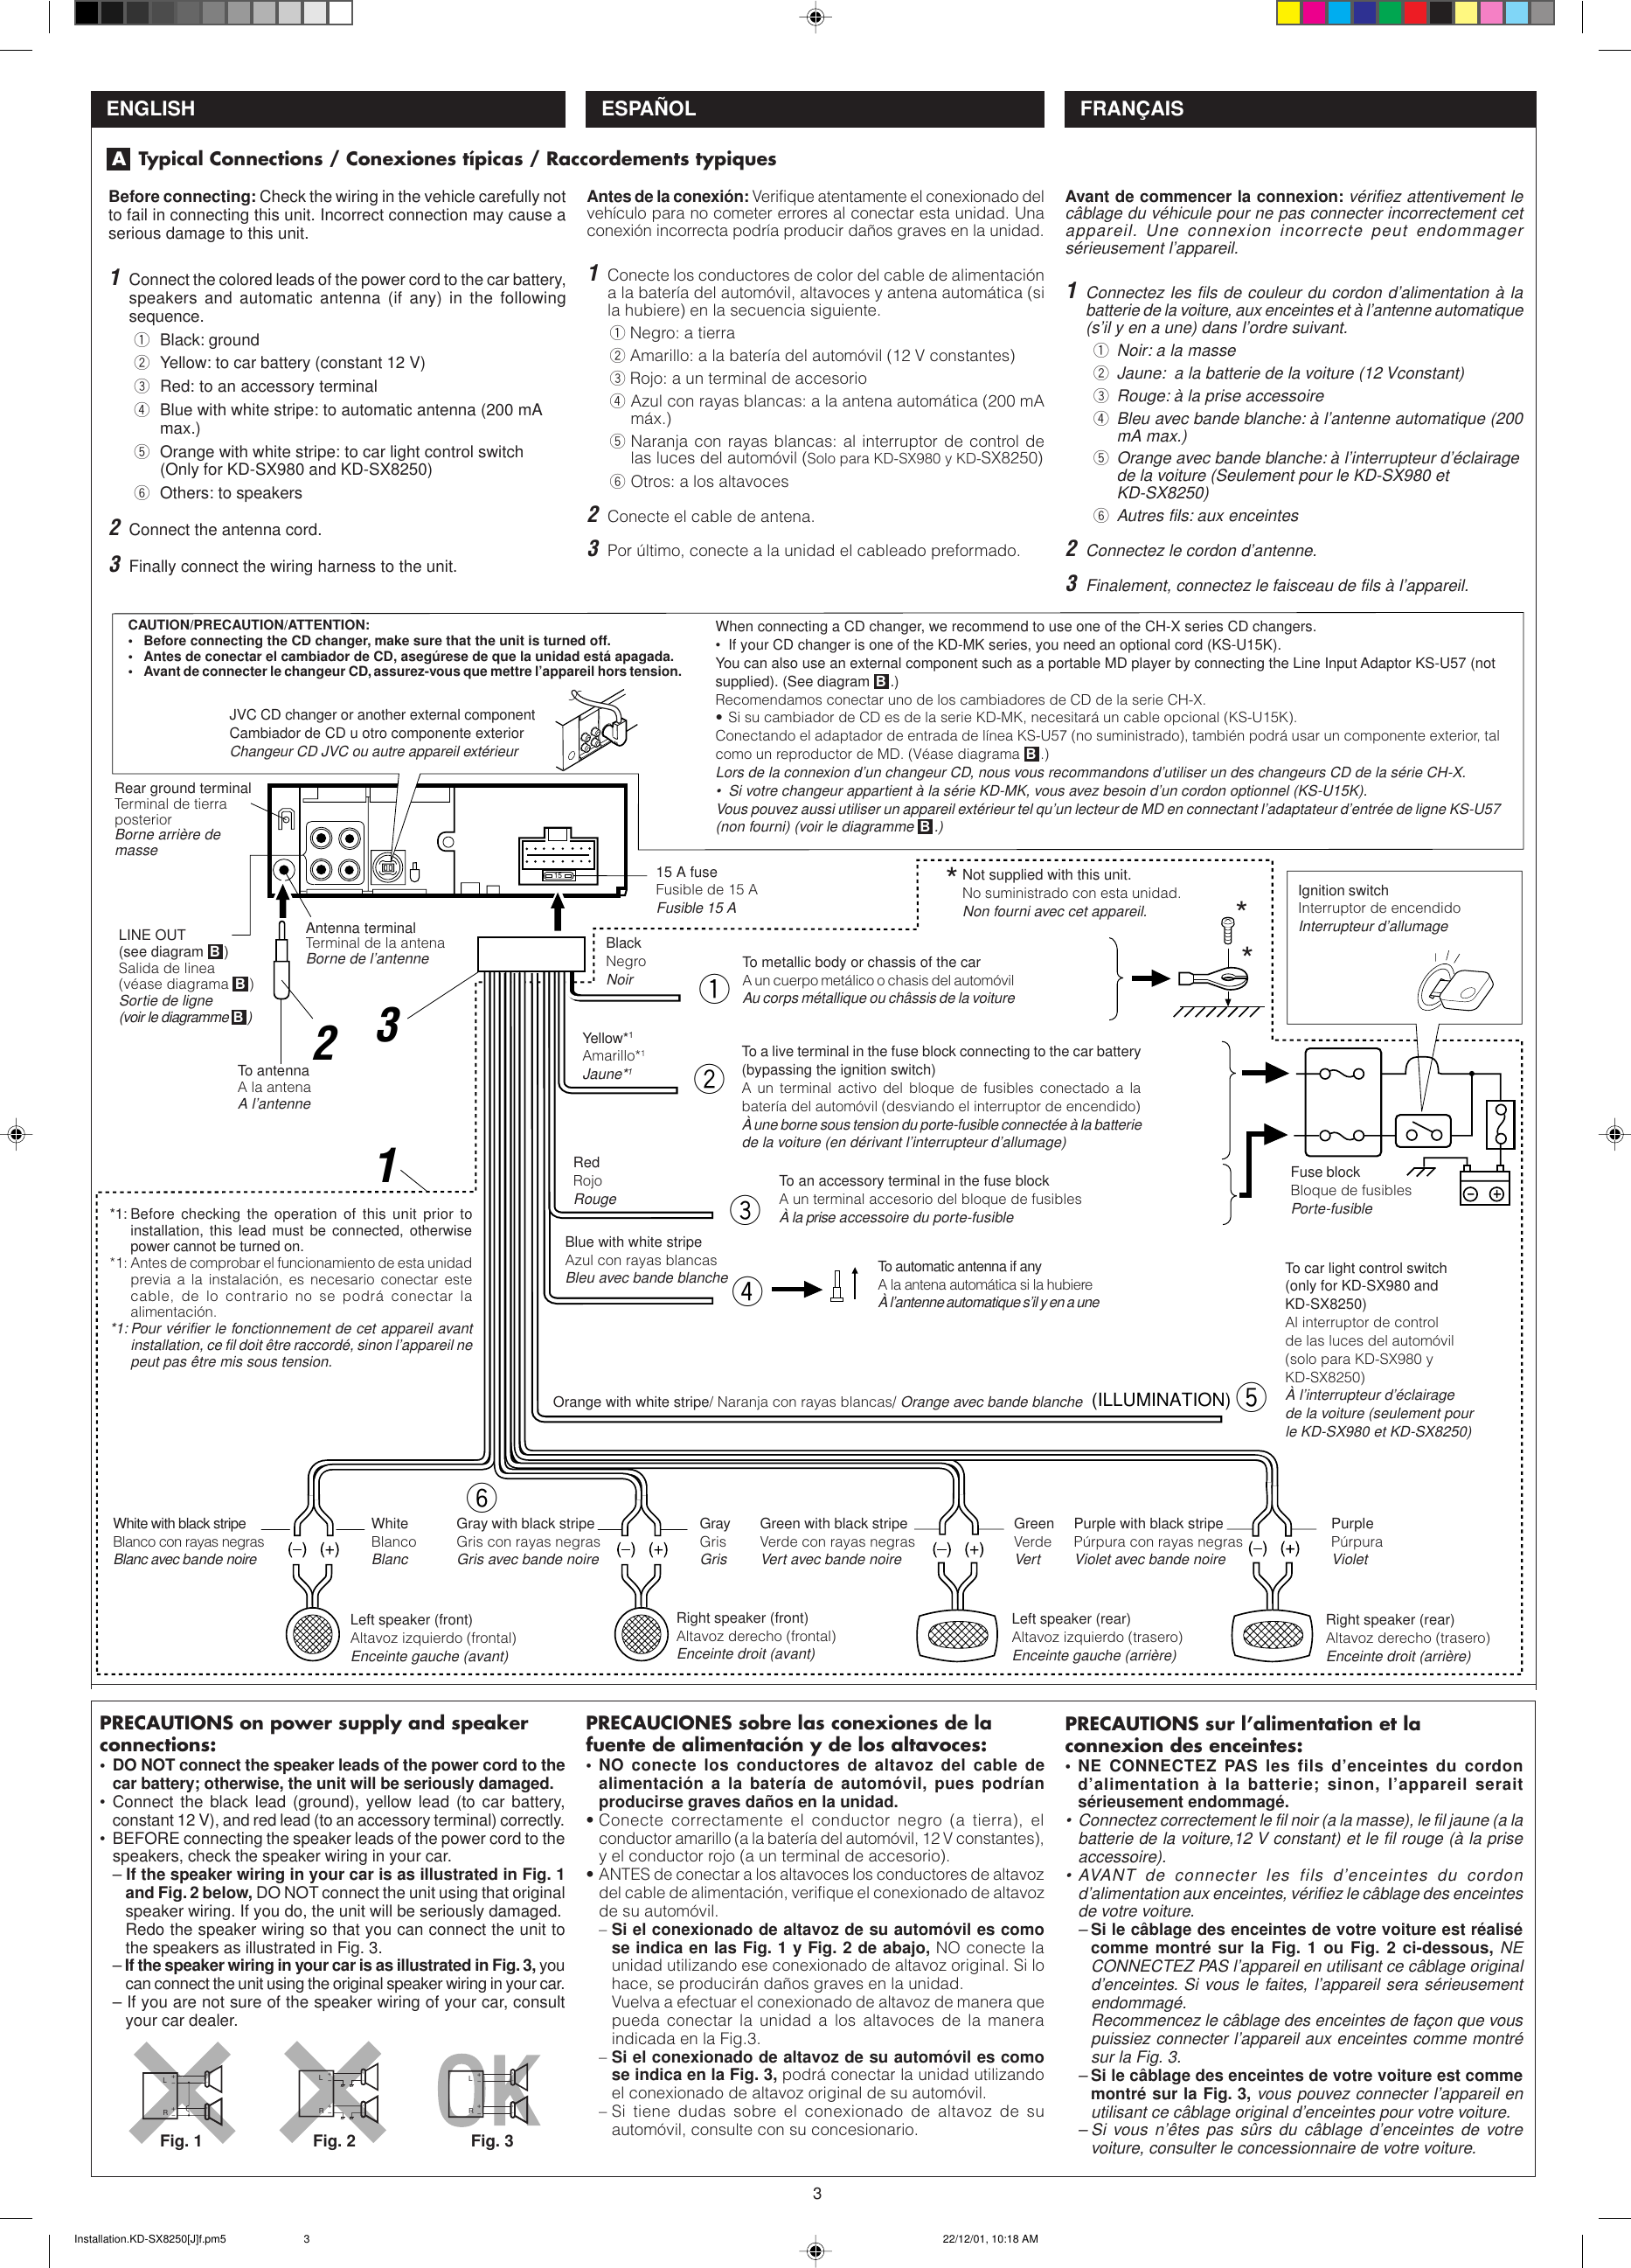 Page 3 of 4 - JVC KD-SX980 KD-SX980/KD-SX8250/KD-SX780 User Manual GET0071-002A